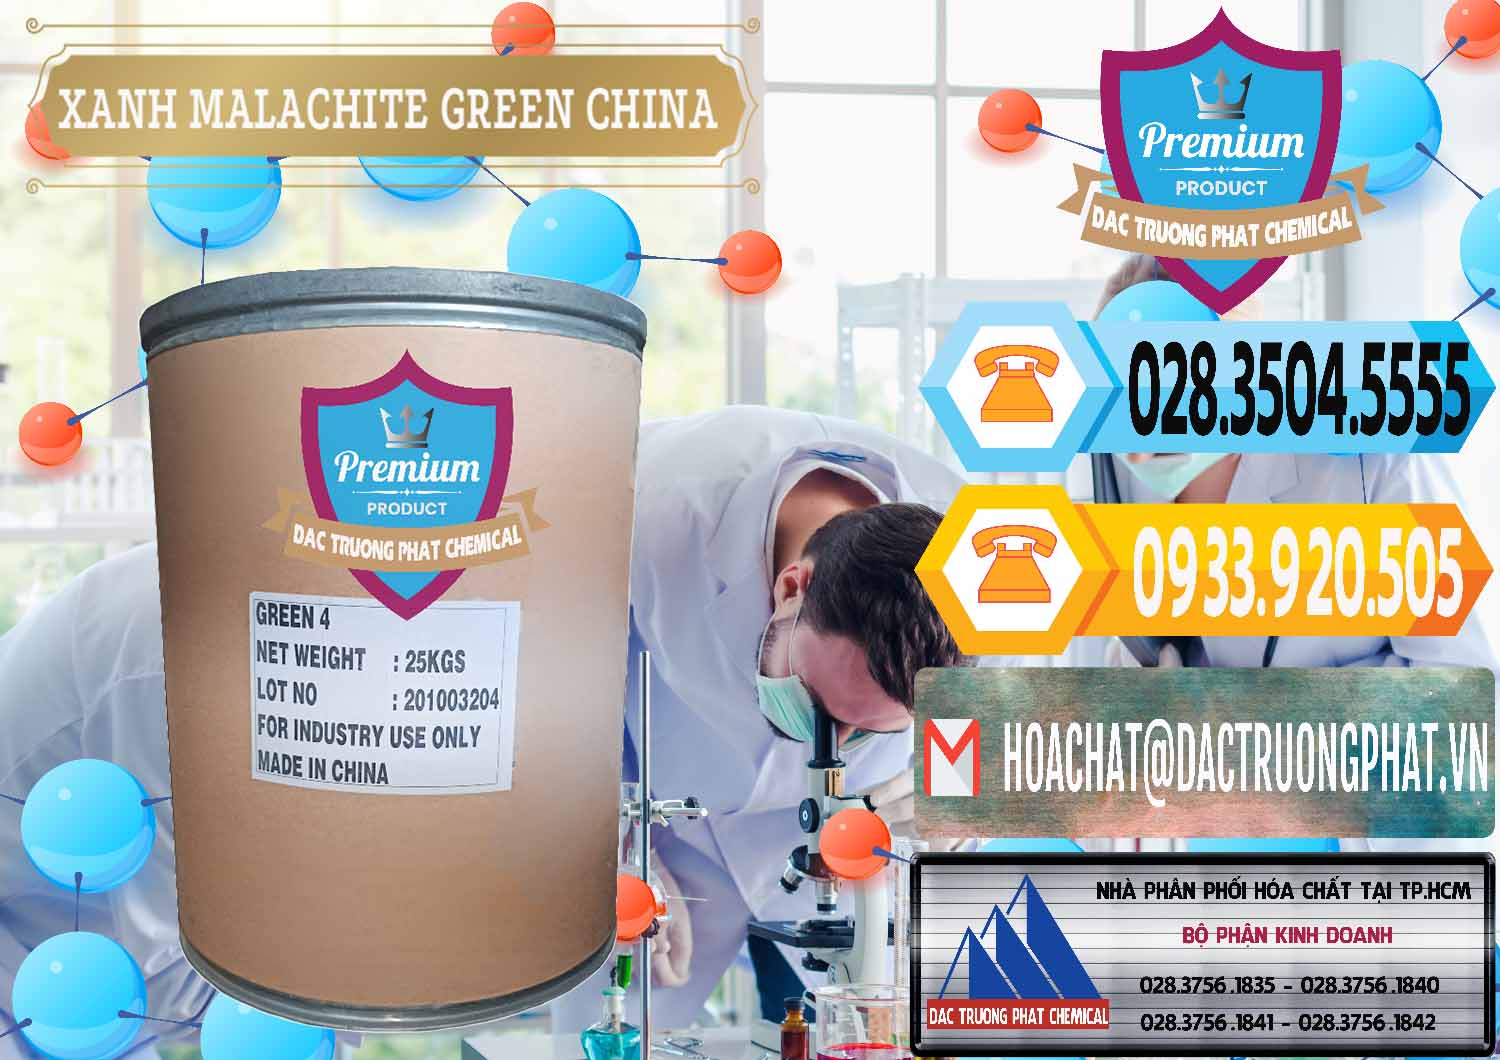 Nơi phân phối và bán Xanh Malachite Green Trung Quốc China - 0325 - Chuyên phân phối và cung ứng hóa chất tại TP.HCM - hoachattayrua.net